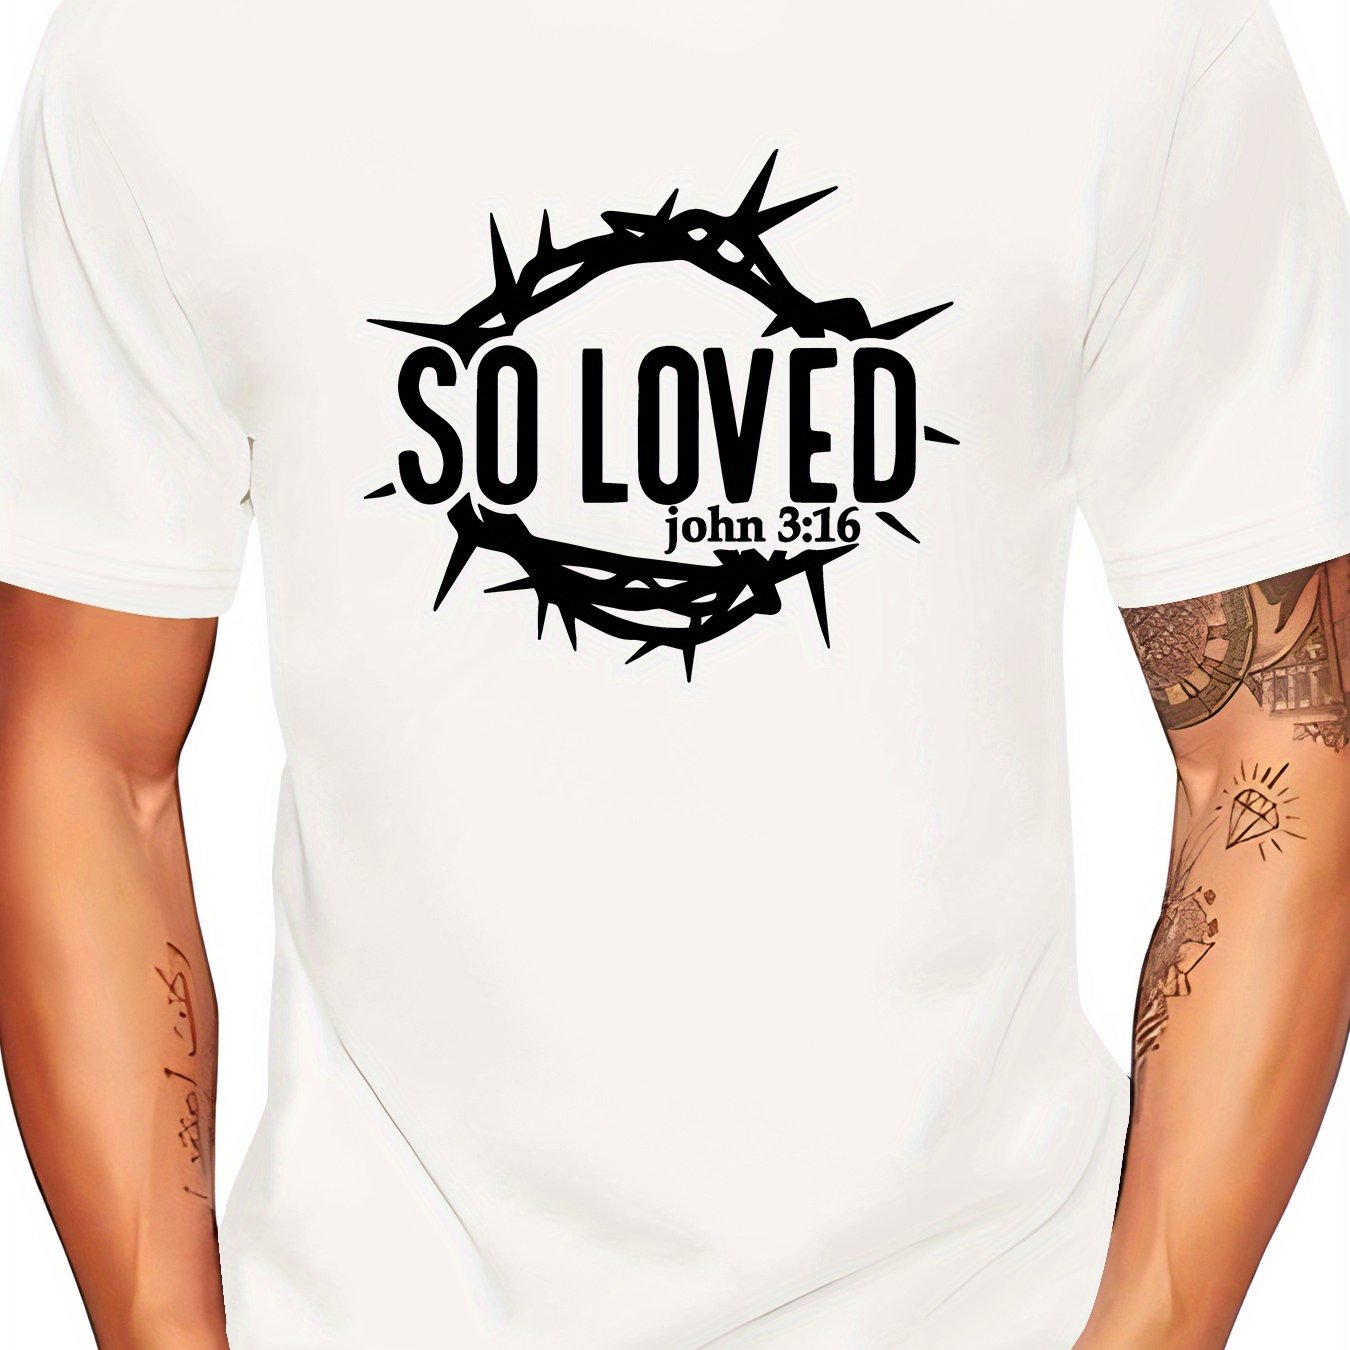 So Loved Men's Christian T-shirt claimedbygoddesigns